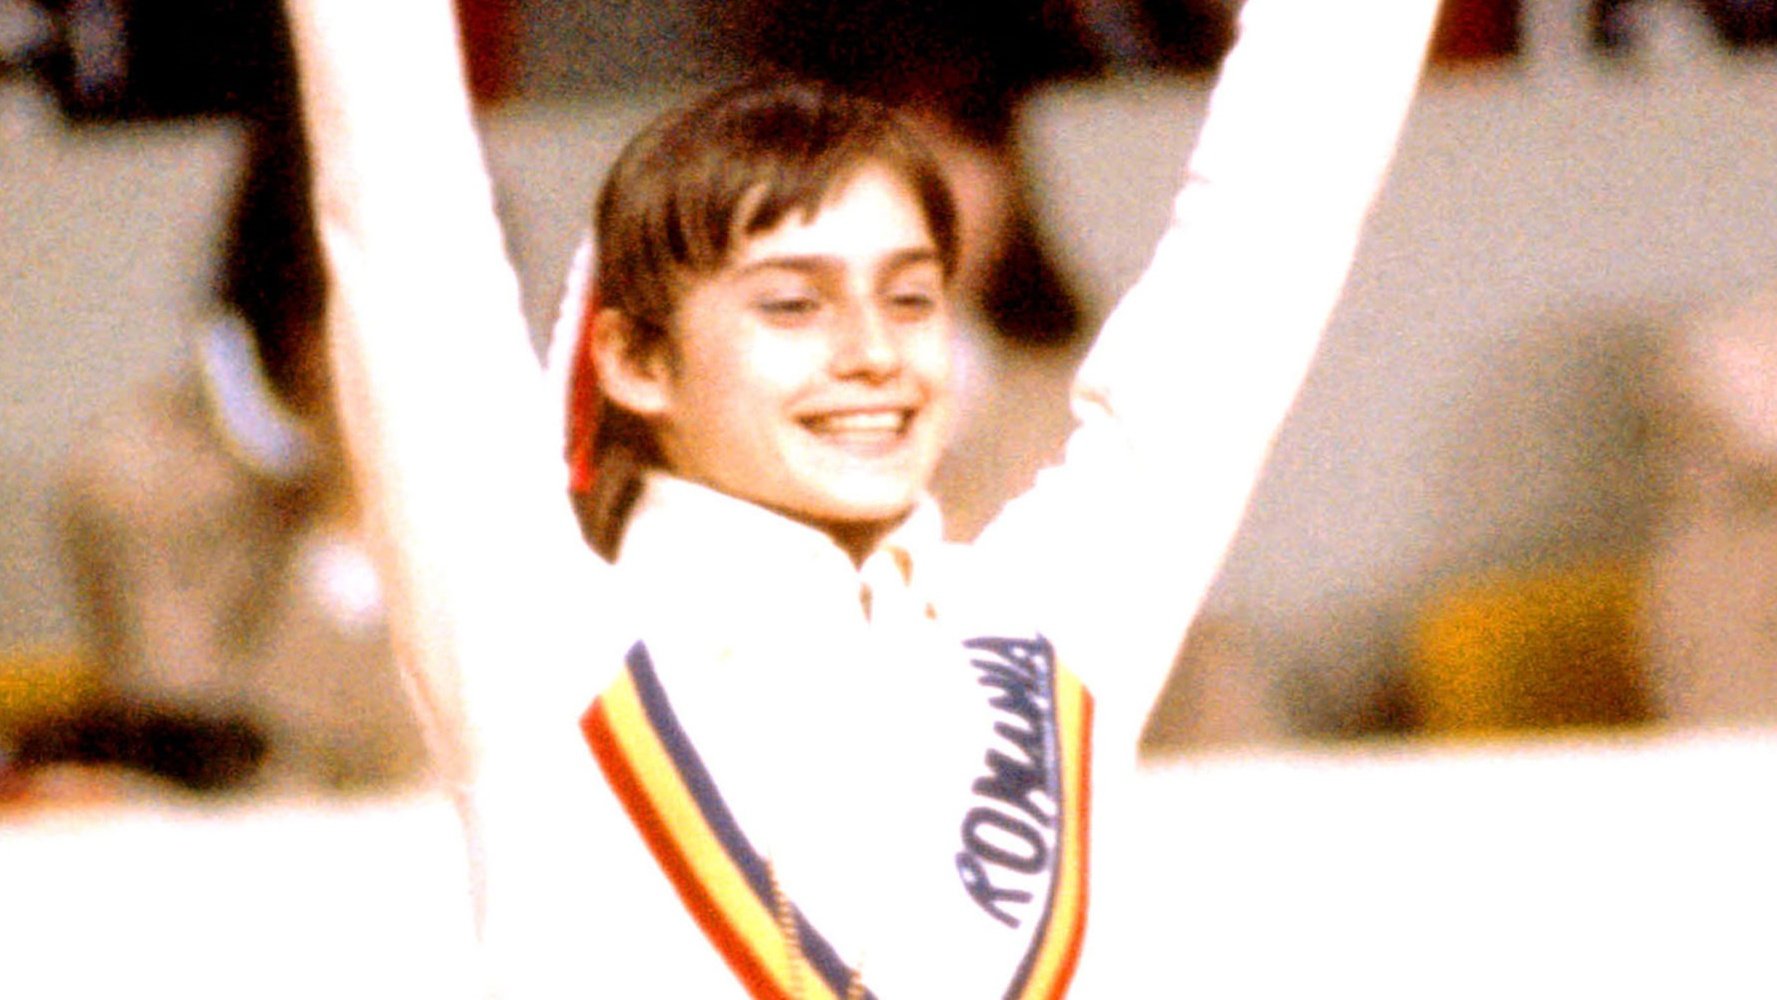 أذهلت كومانتشي العالم بعمر الرابعة عشرة في أولمبياد مونتريال 1976